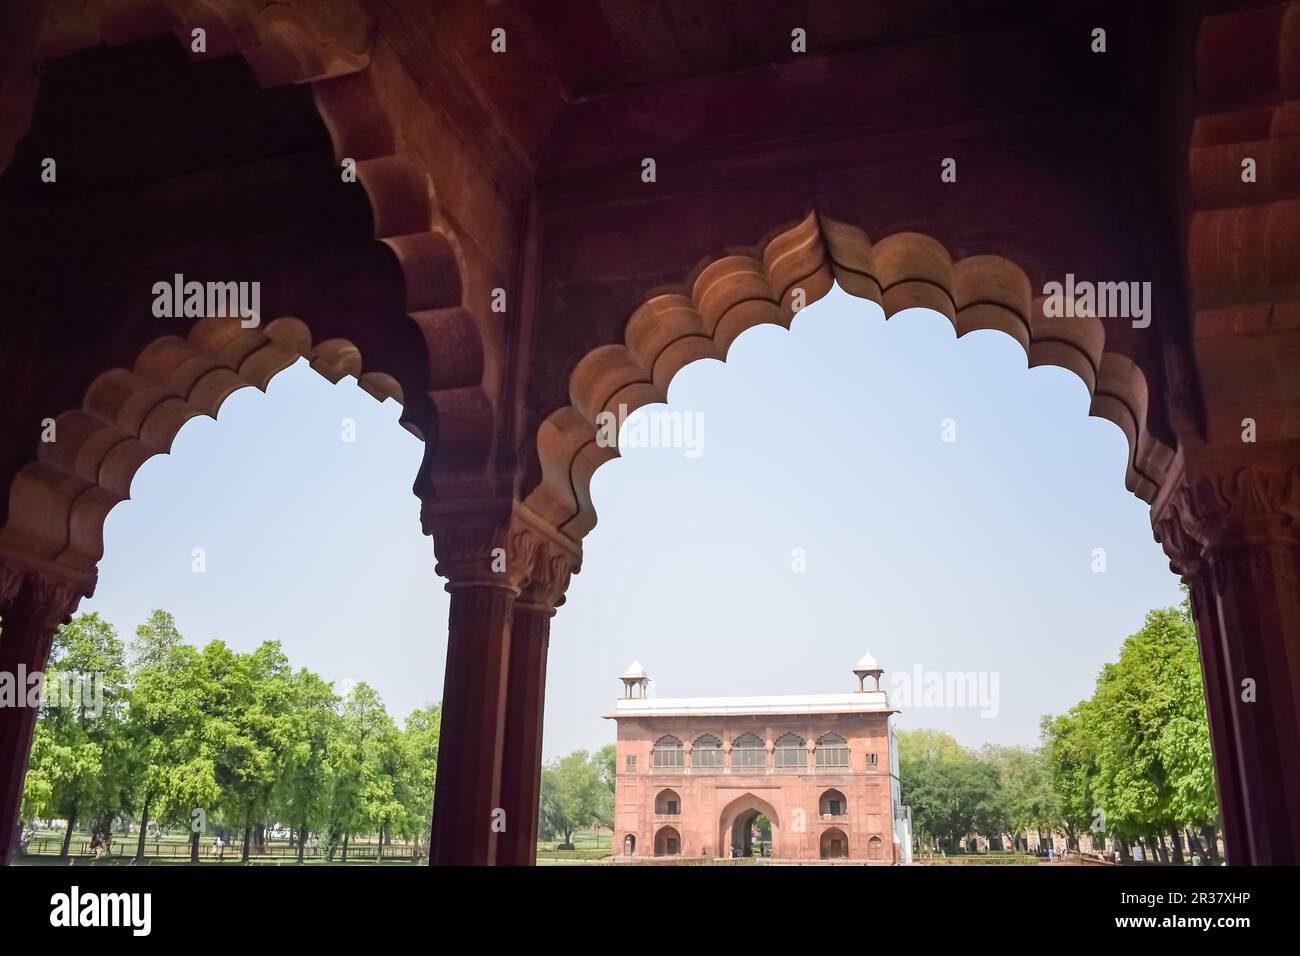 Architektonische Details von Lal Qila - Red Fort in Old Delhi, Indien, sehen Sie das Innere des Delhi Red Fort, das berühmte indische Wahrzeichen Stockfoto